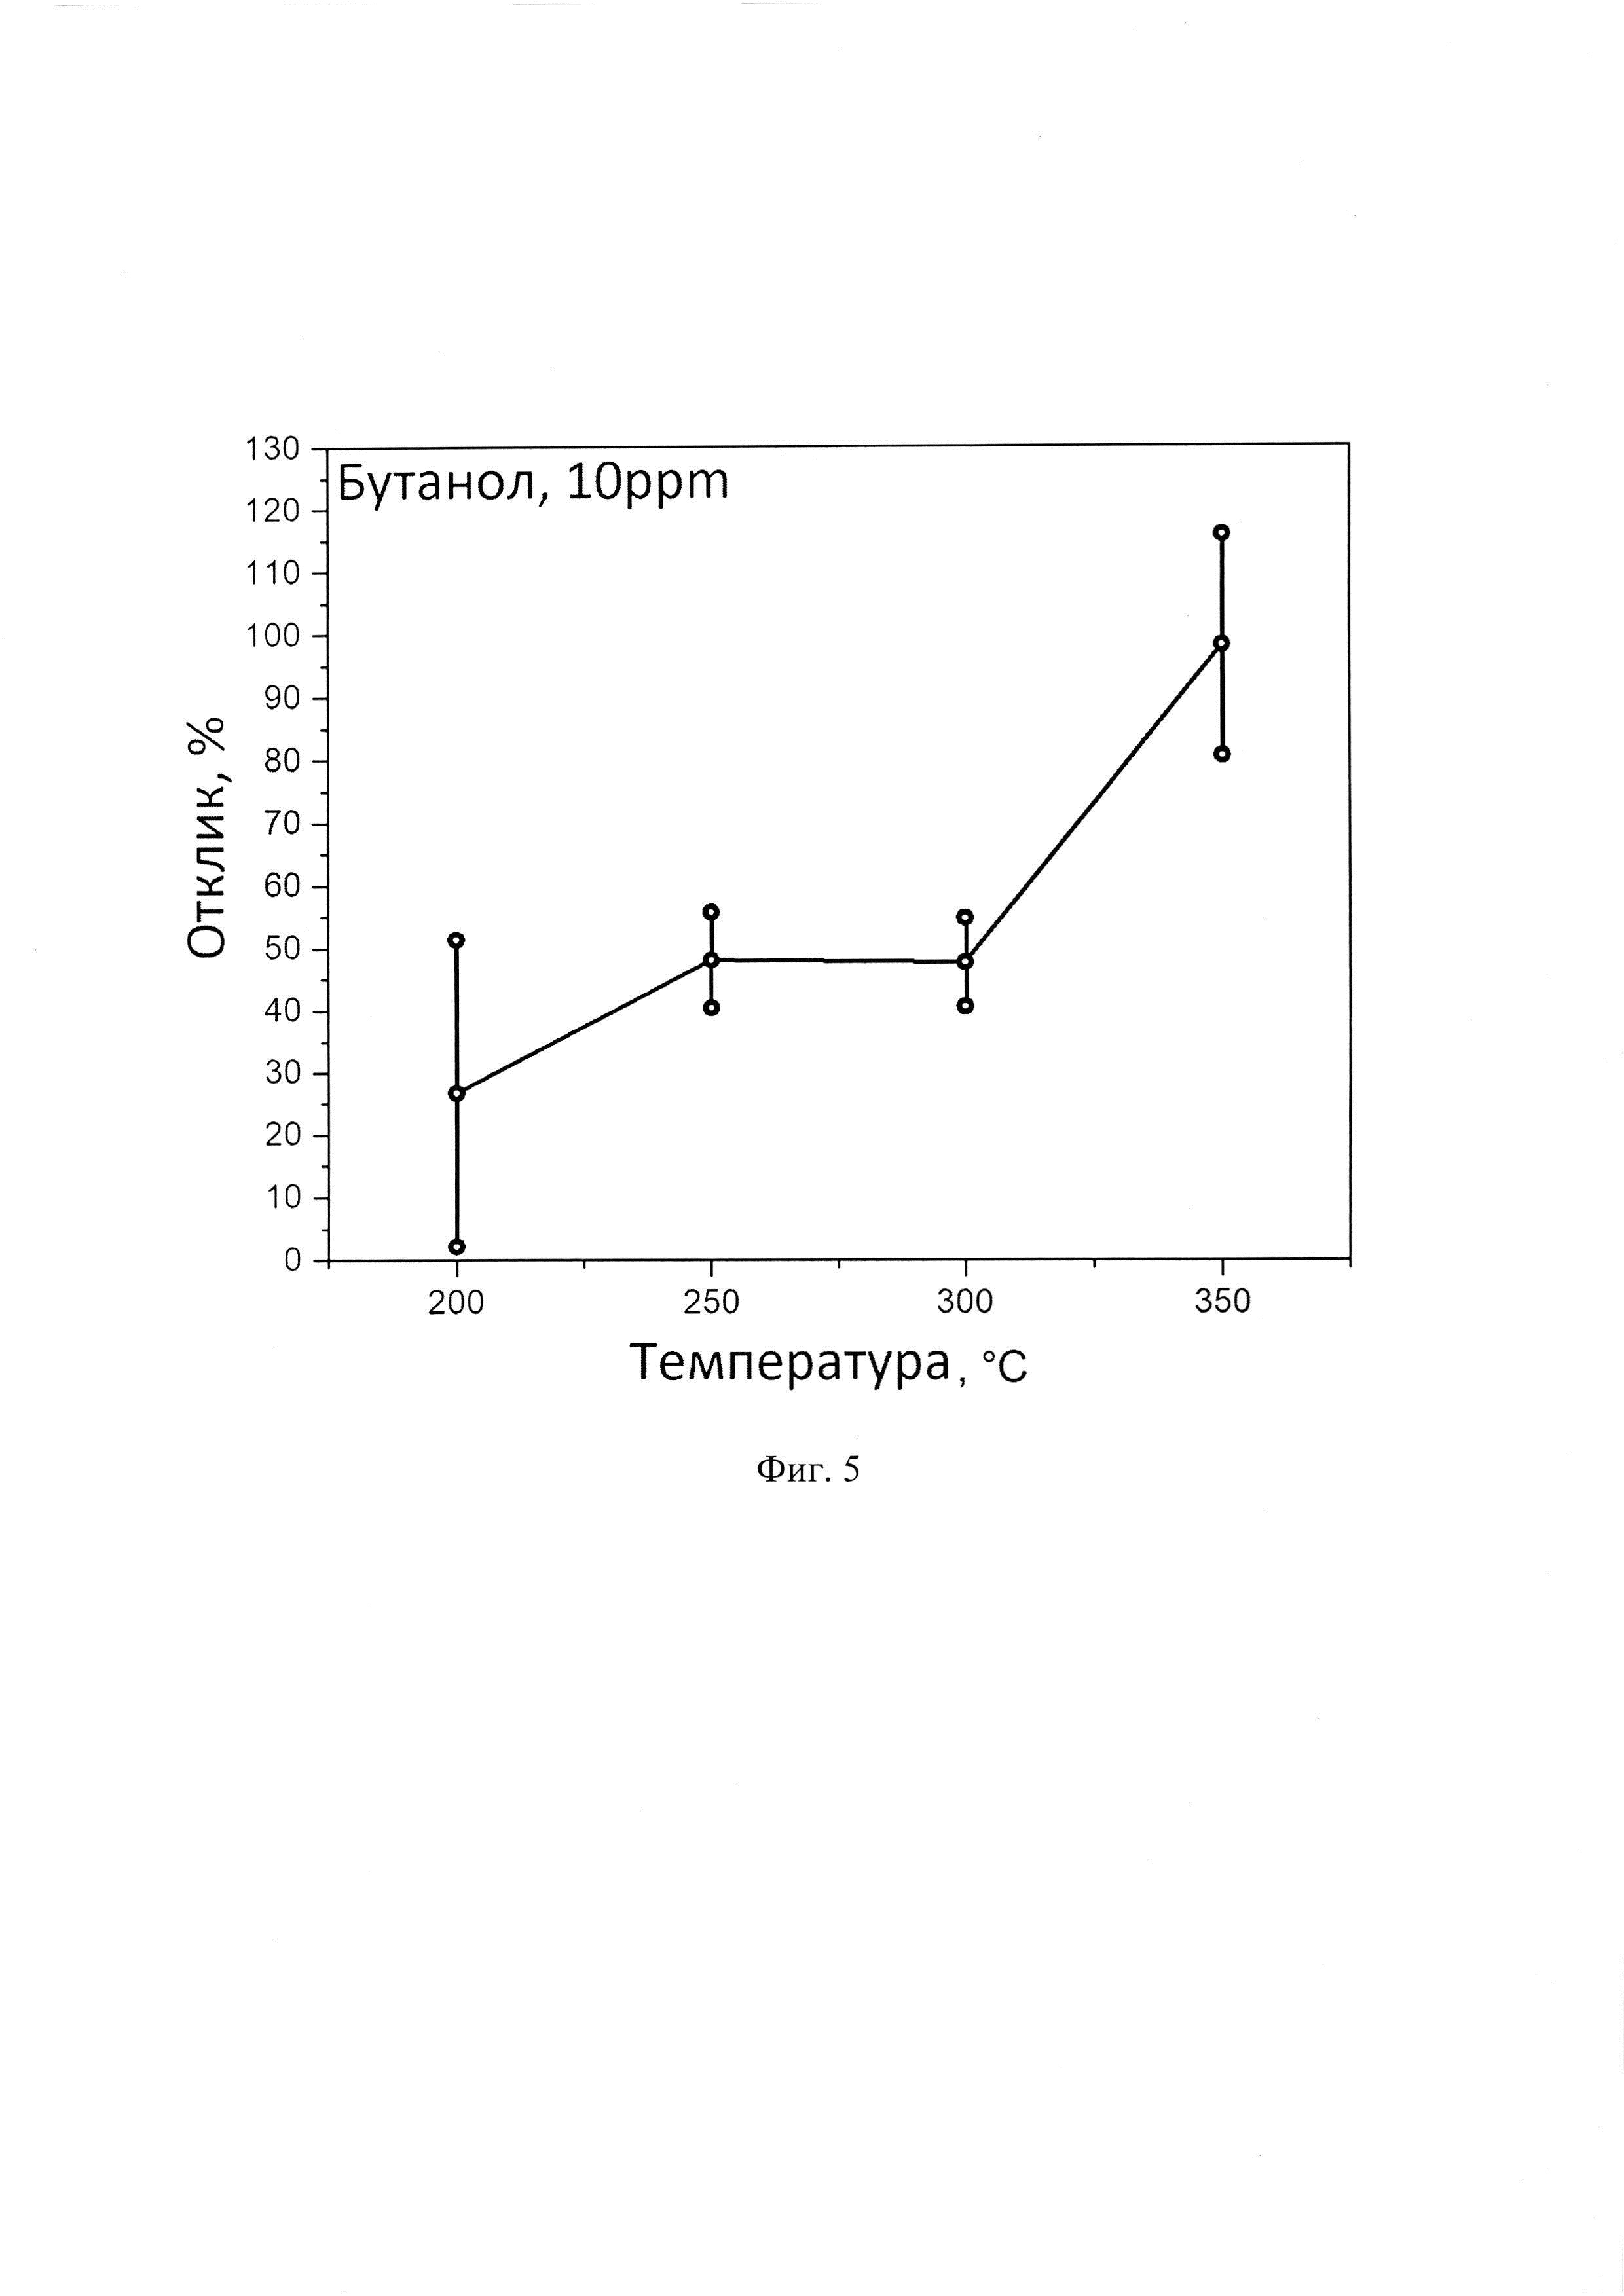 Газовый сенсор, мультисенсорная линейка хеморезистивного типа на основе окисленного двумерного карбида титана (максена) и способ их изготовления